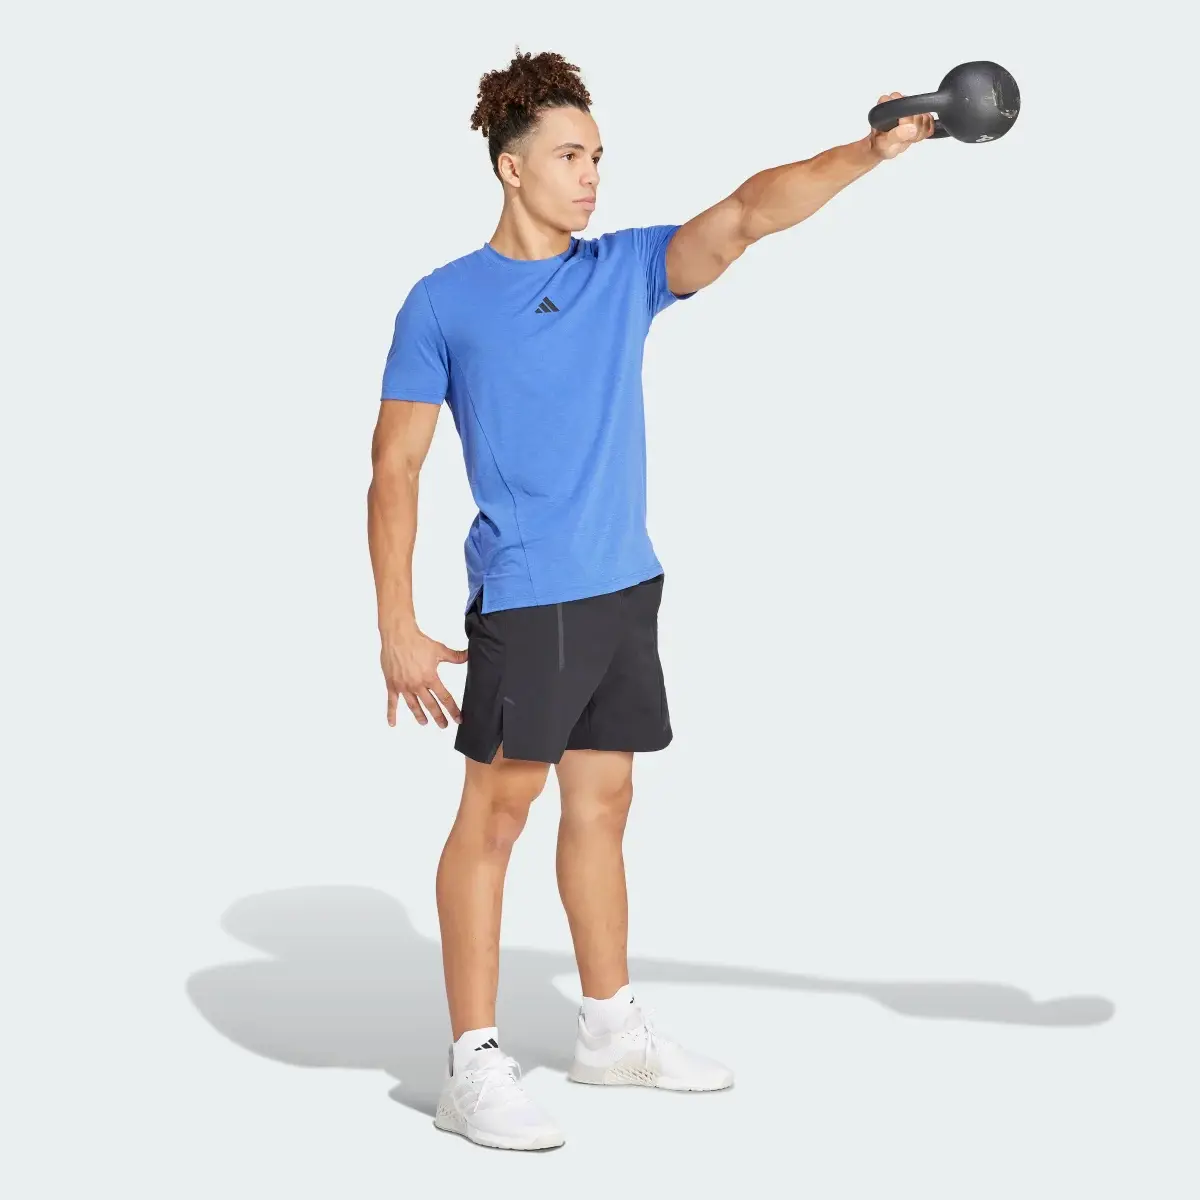 Adidas Koszulka Designed for Training Workout. 3